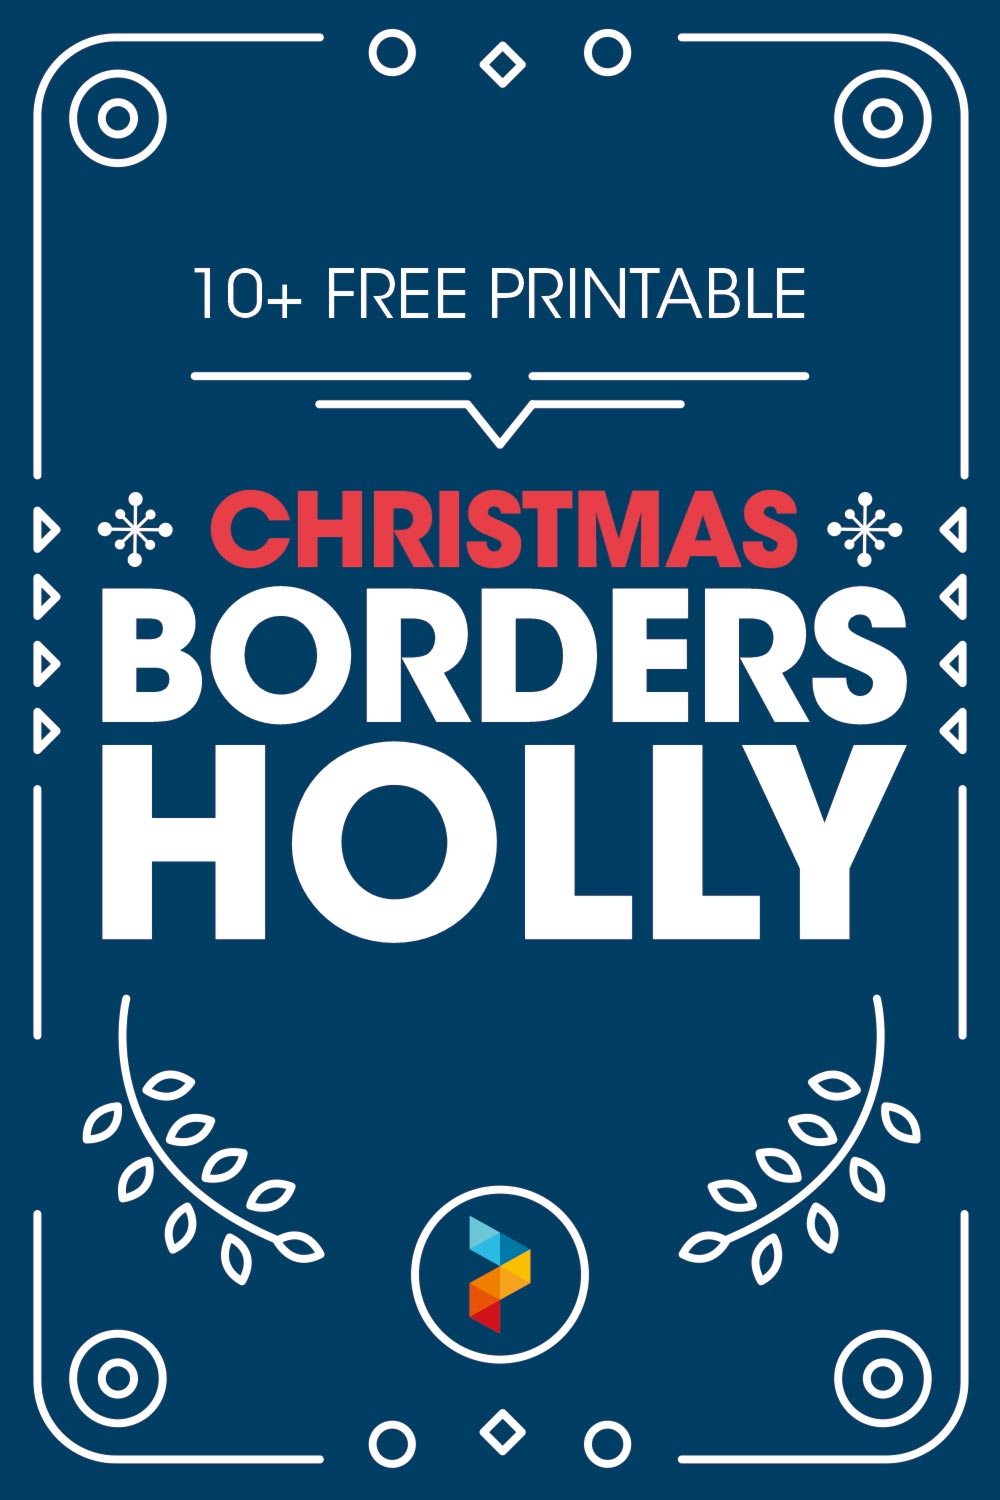 Printable Christmas Borders Holly